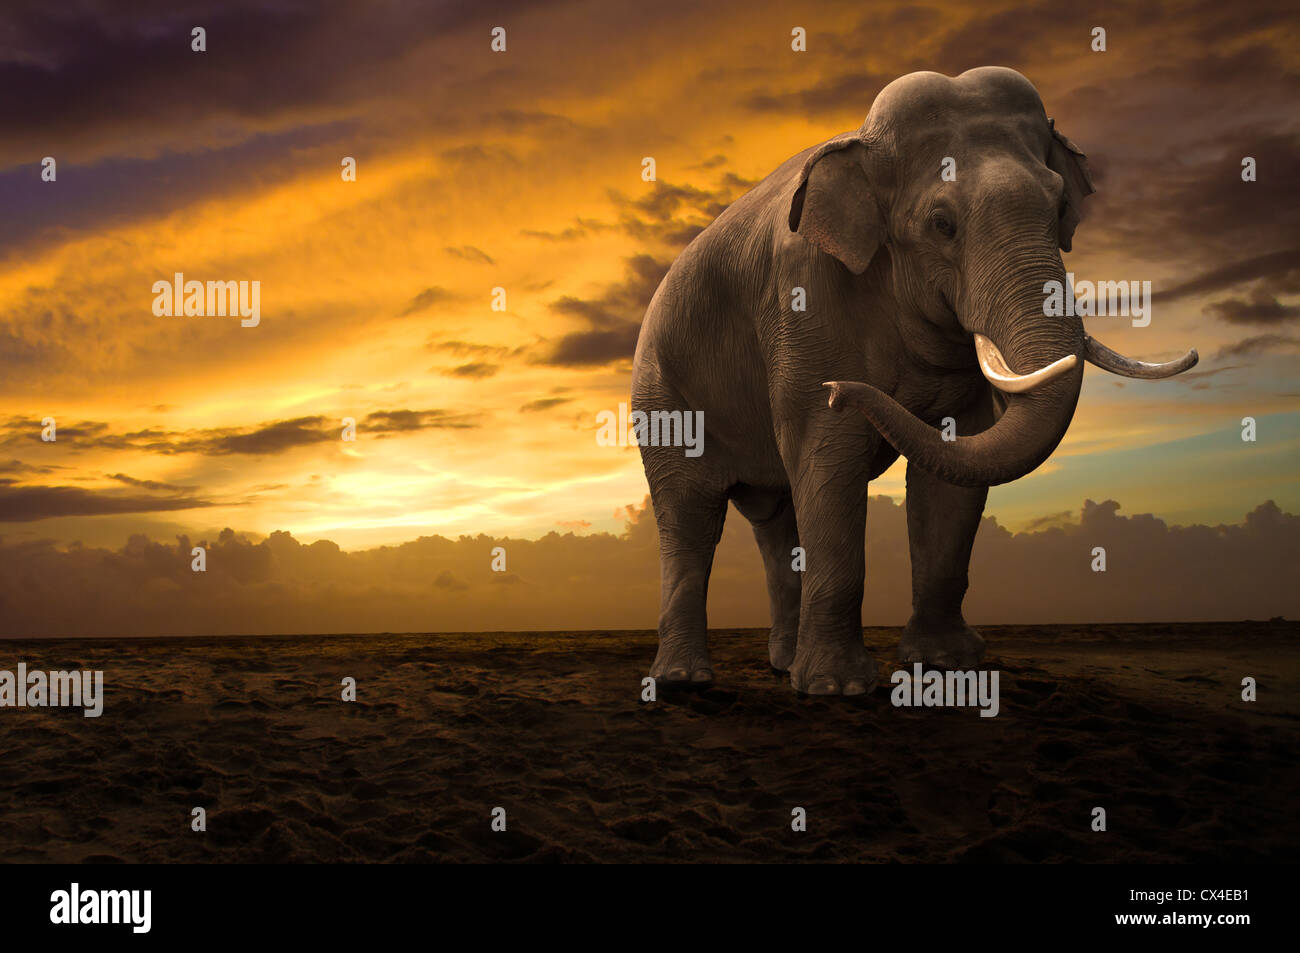 elephant walking outdoor on sunset Stock Photo